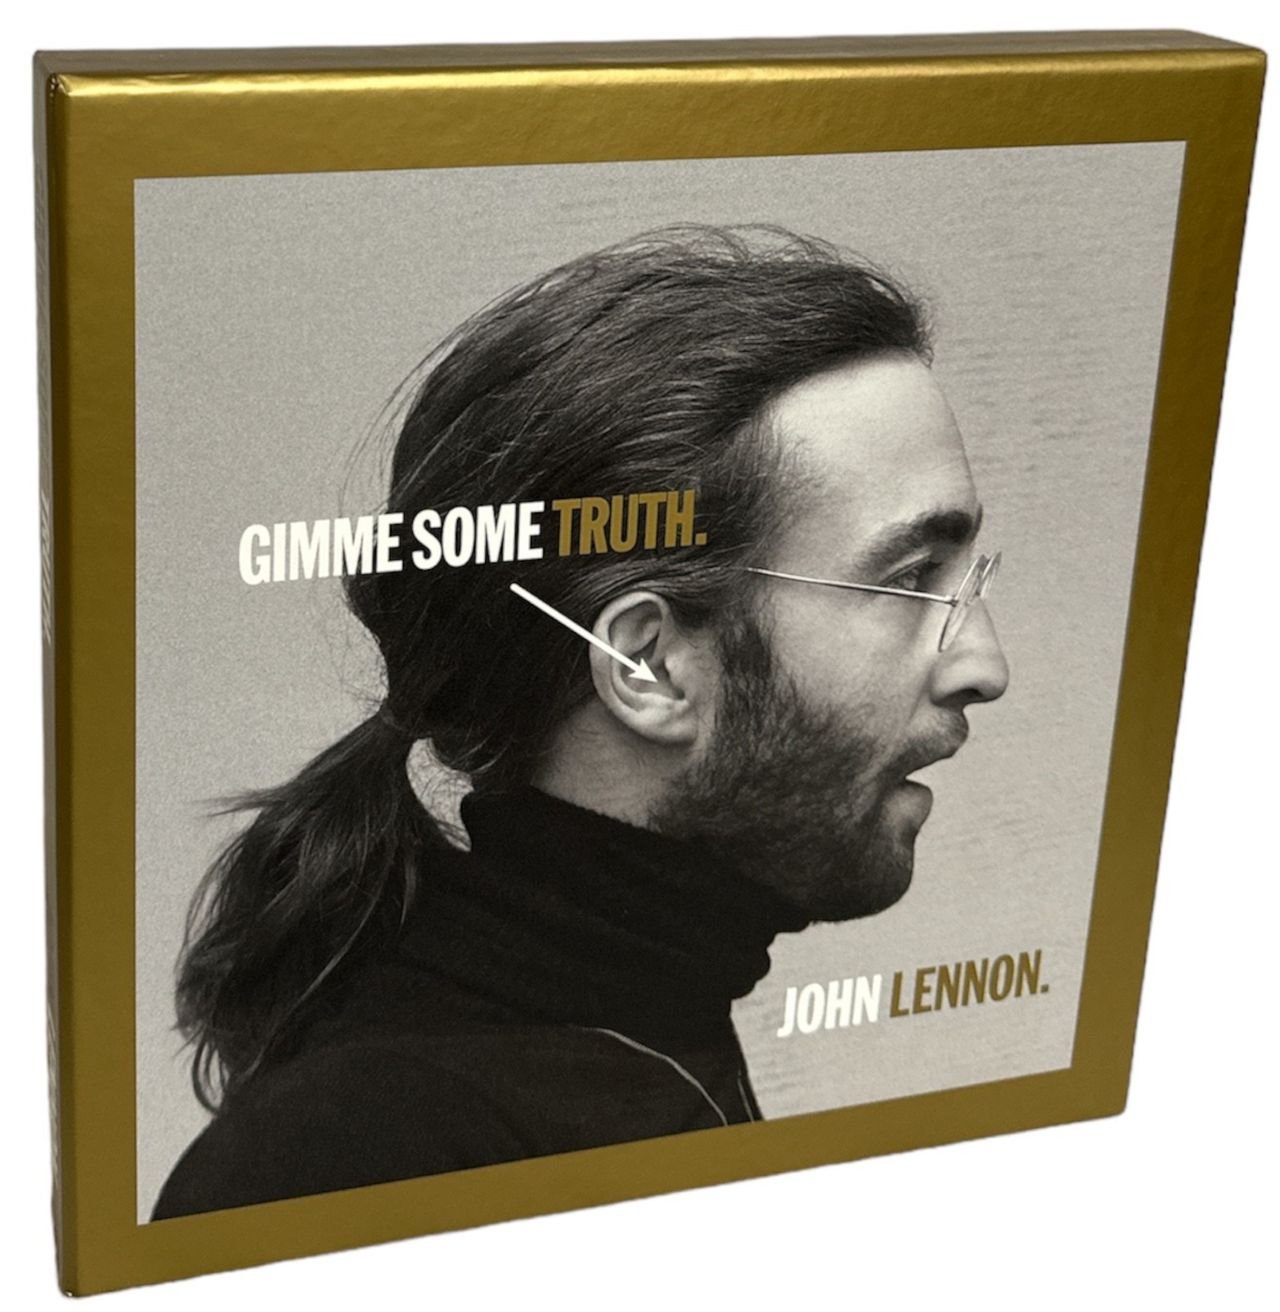 set　UK　Gimme　EX　Cd　—　album　Box　Some　Lennon　CD　box　John　Truth